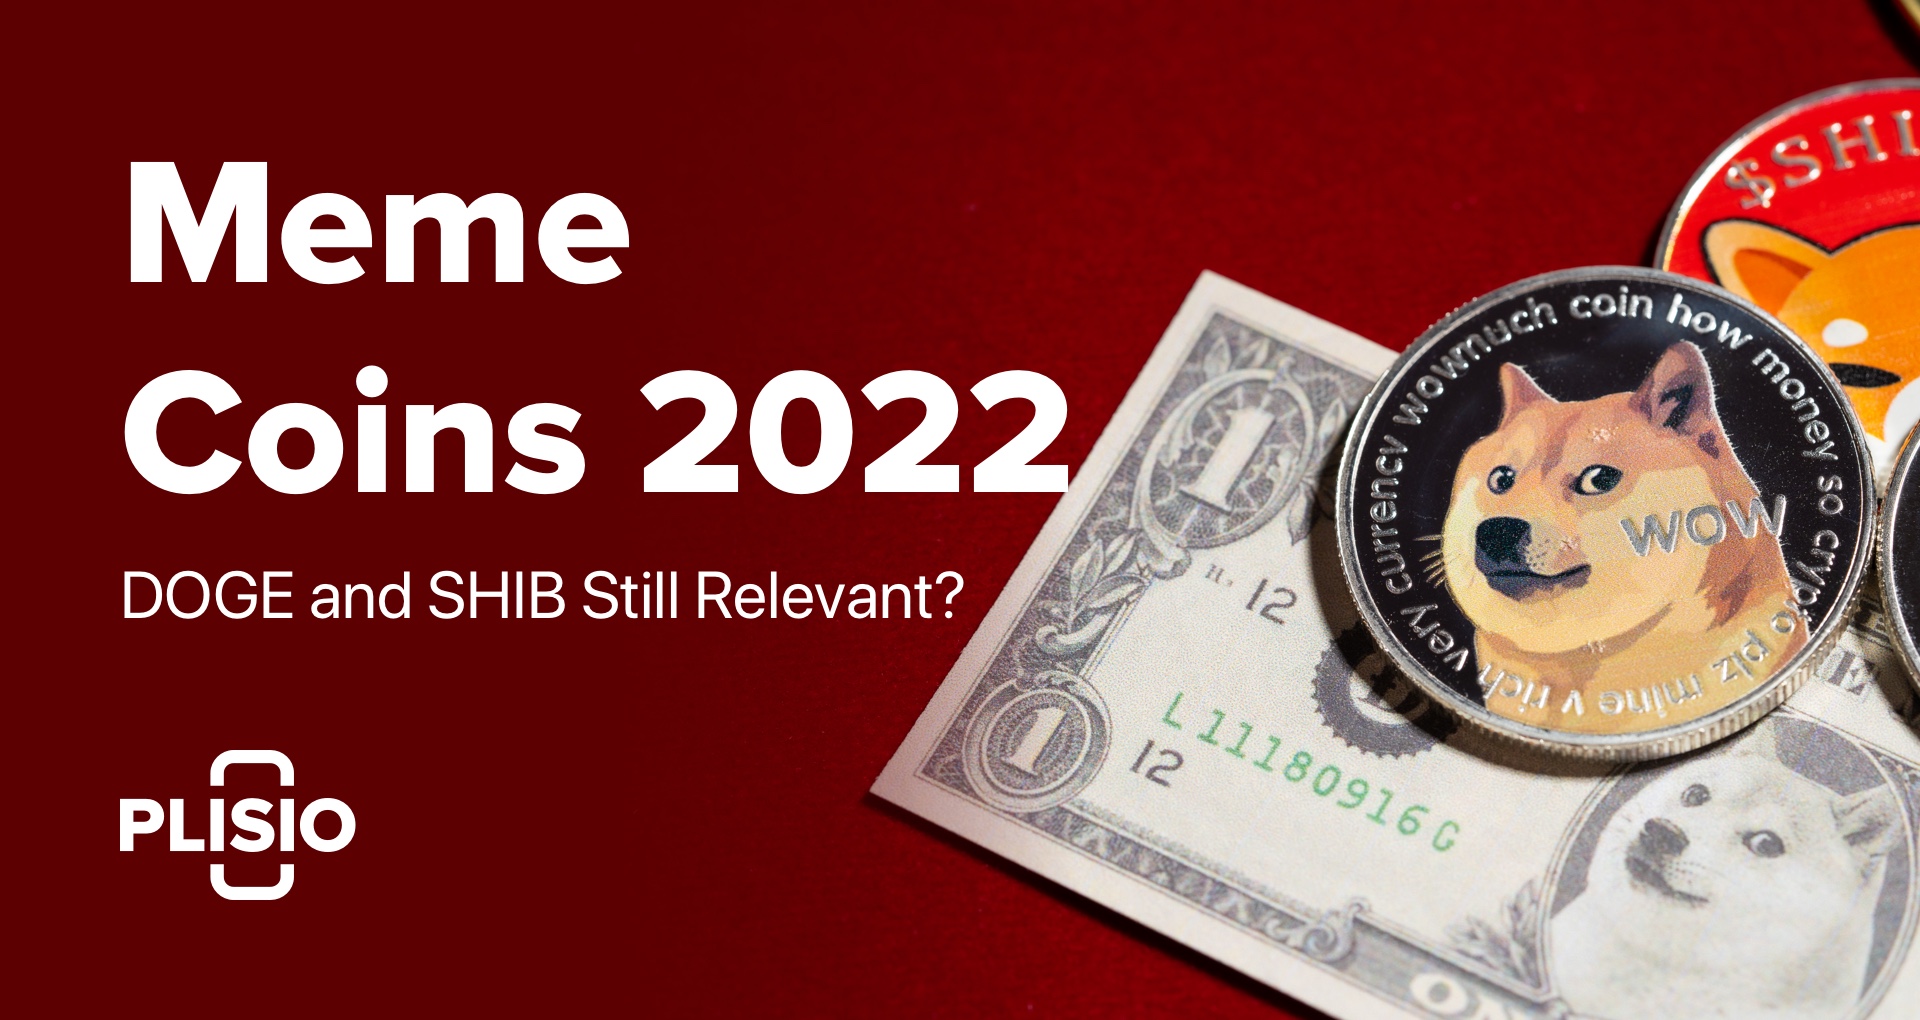 Meme-Coins im Jahr 2022: Dogecoin und Shiba Inu immer noch relevant?